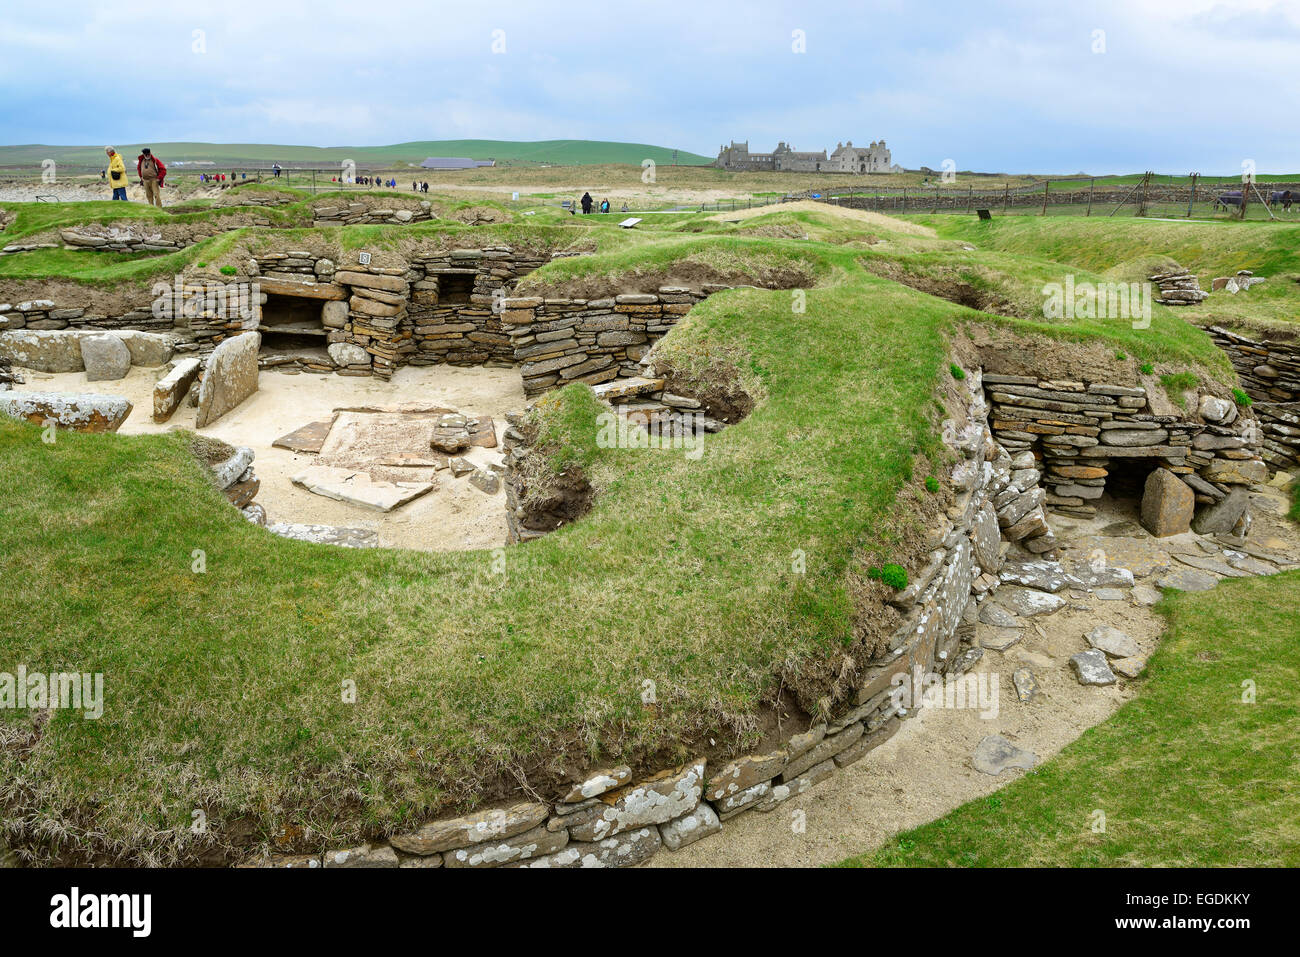 Les touristes se rendant sur le site néolithique Skara Brae, Skara Brae, Site du patrimoine mondial de l'UNESCO Le Coeur néolithique des Orcades, îles Orcades, Ecosse, Grande-Bretagne, Royaume-Uni Banque D'Images